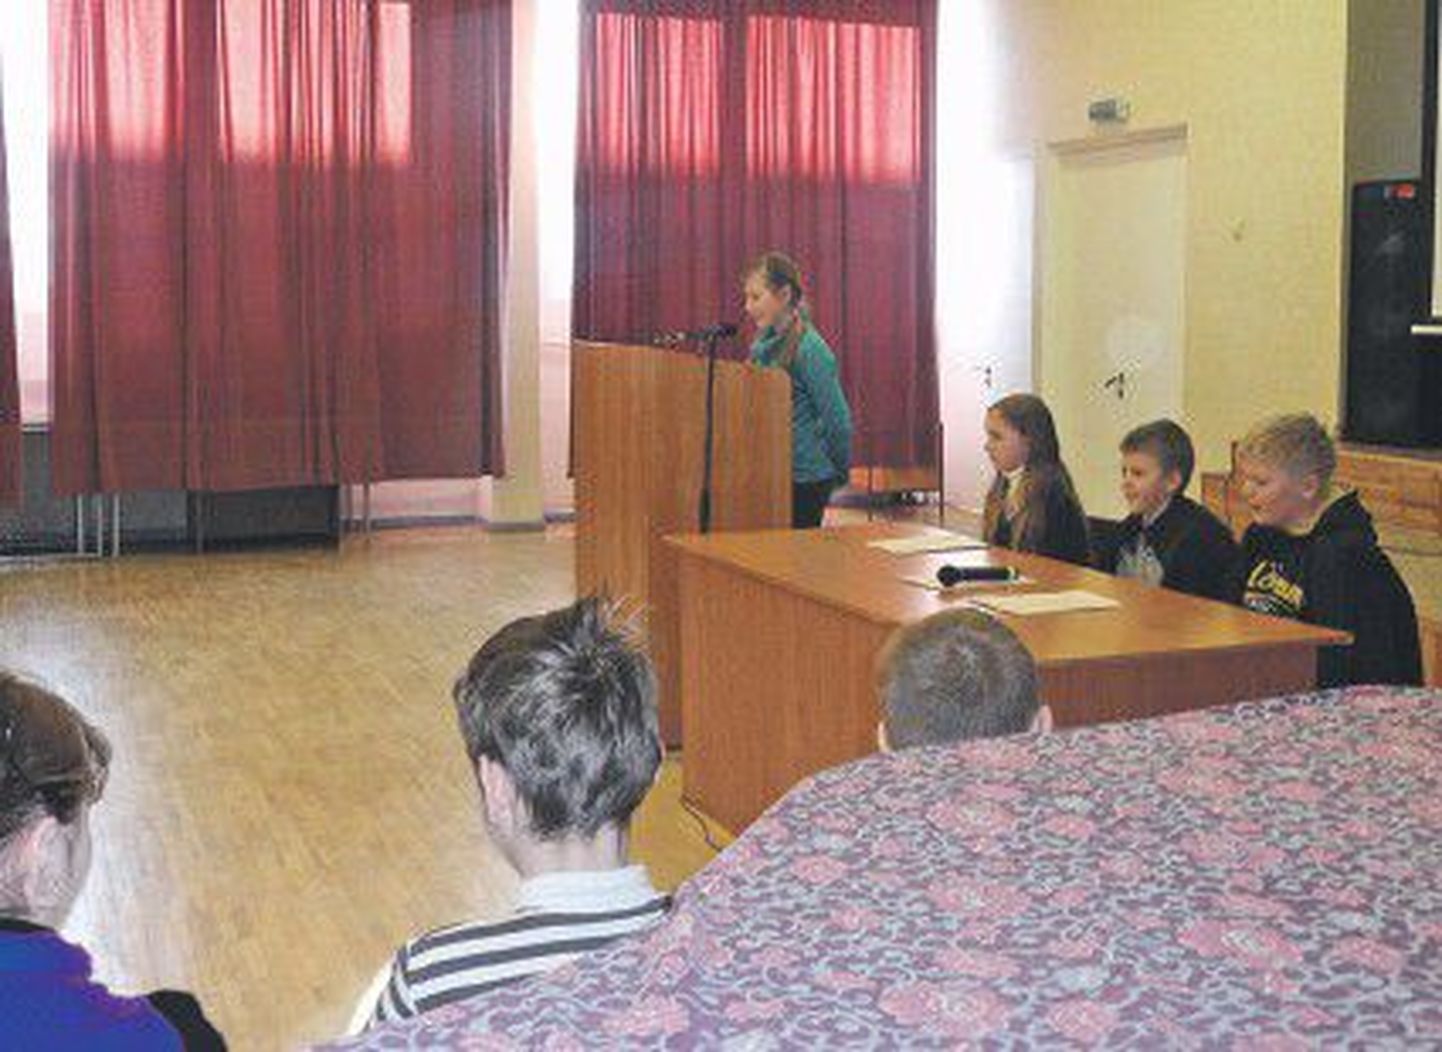 «Суд над микробами» в Русской гимназии Йыхви вынес свой вердикт: профилактикой инфекционных болезней является здоровый образ жизни.